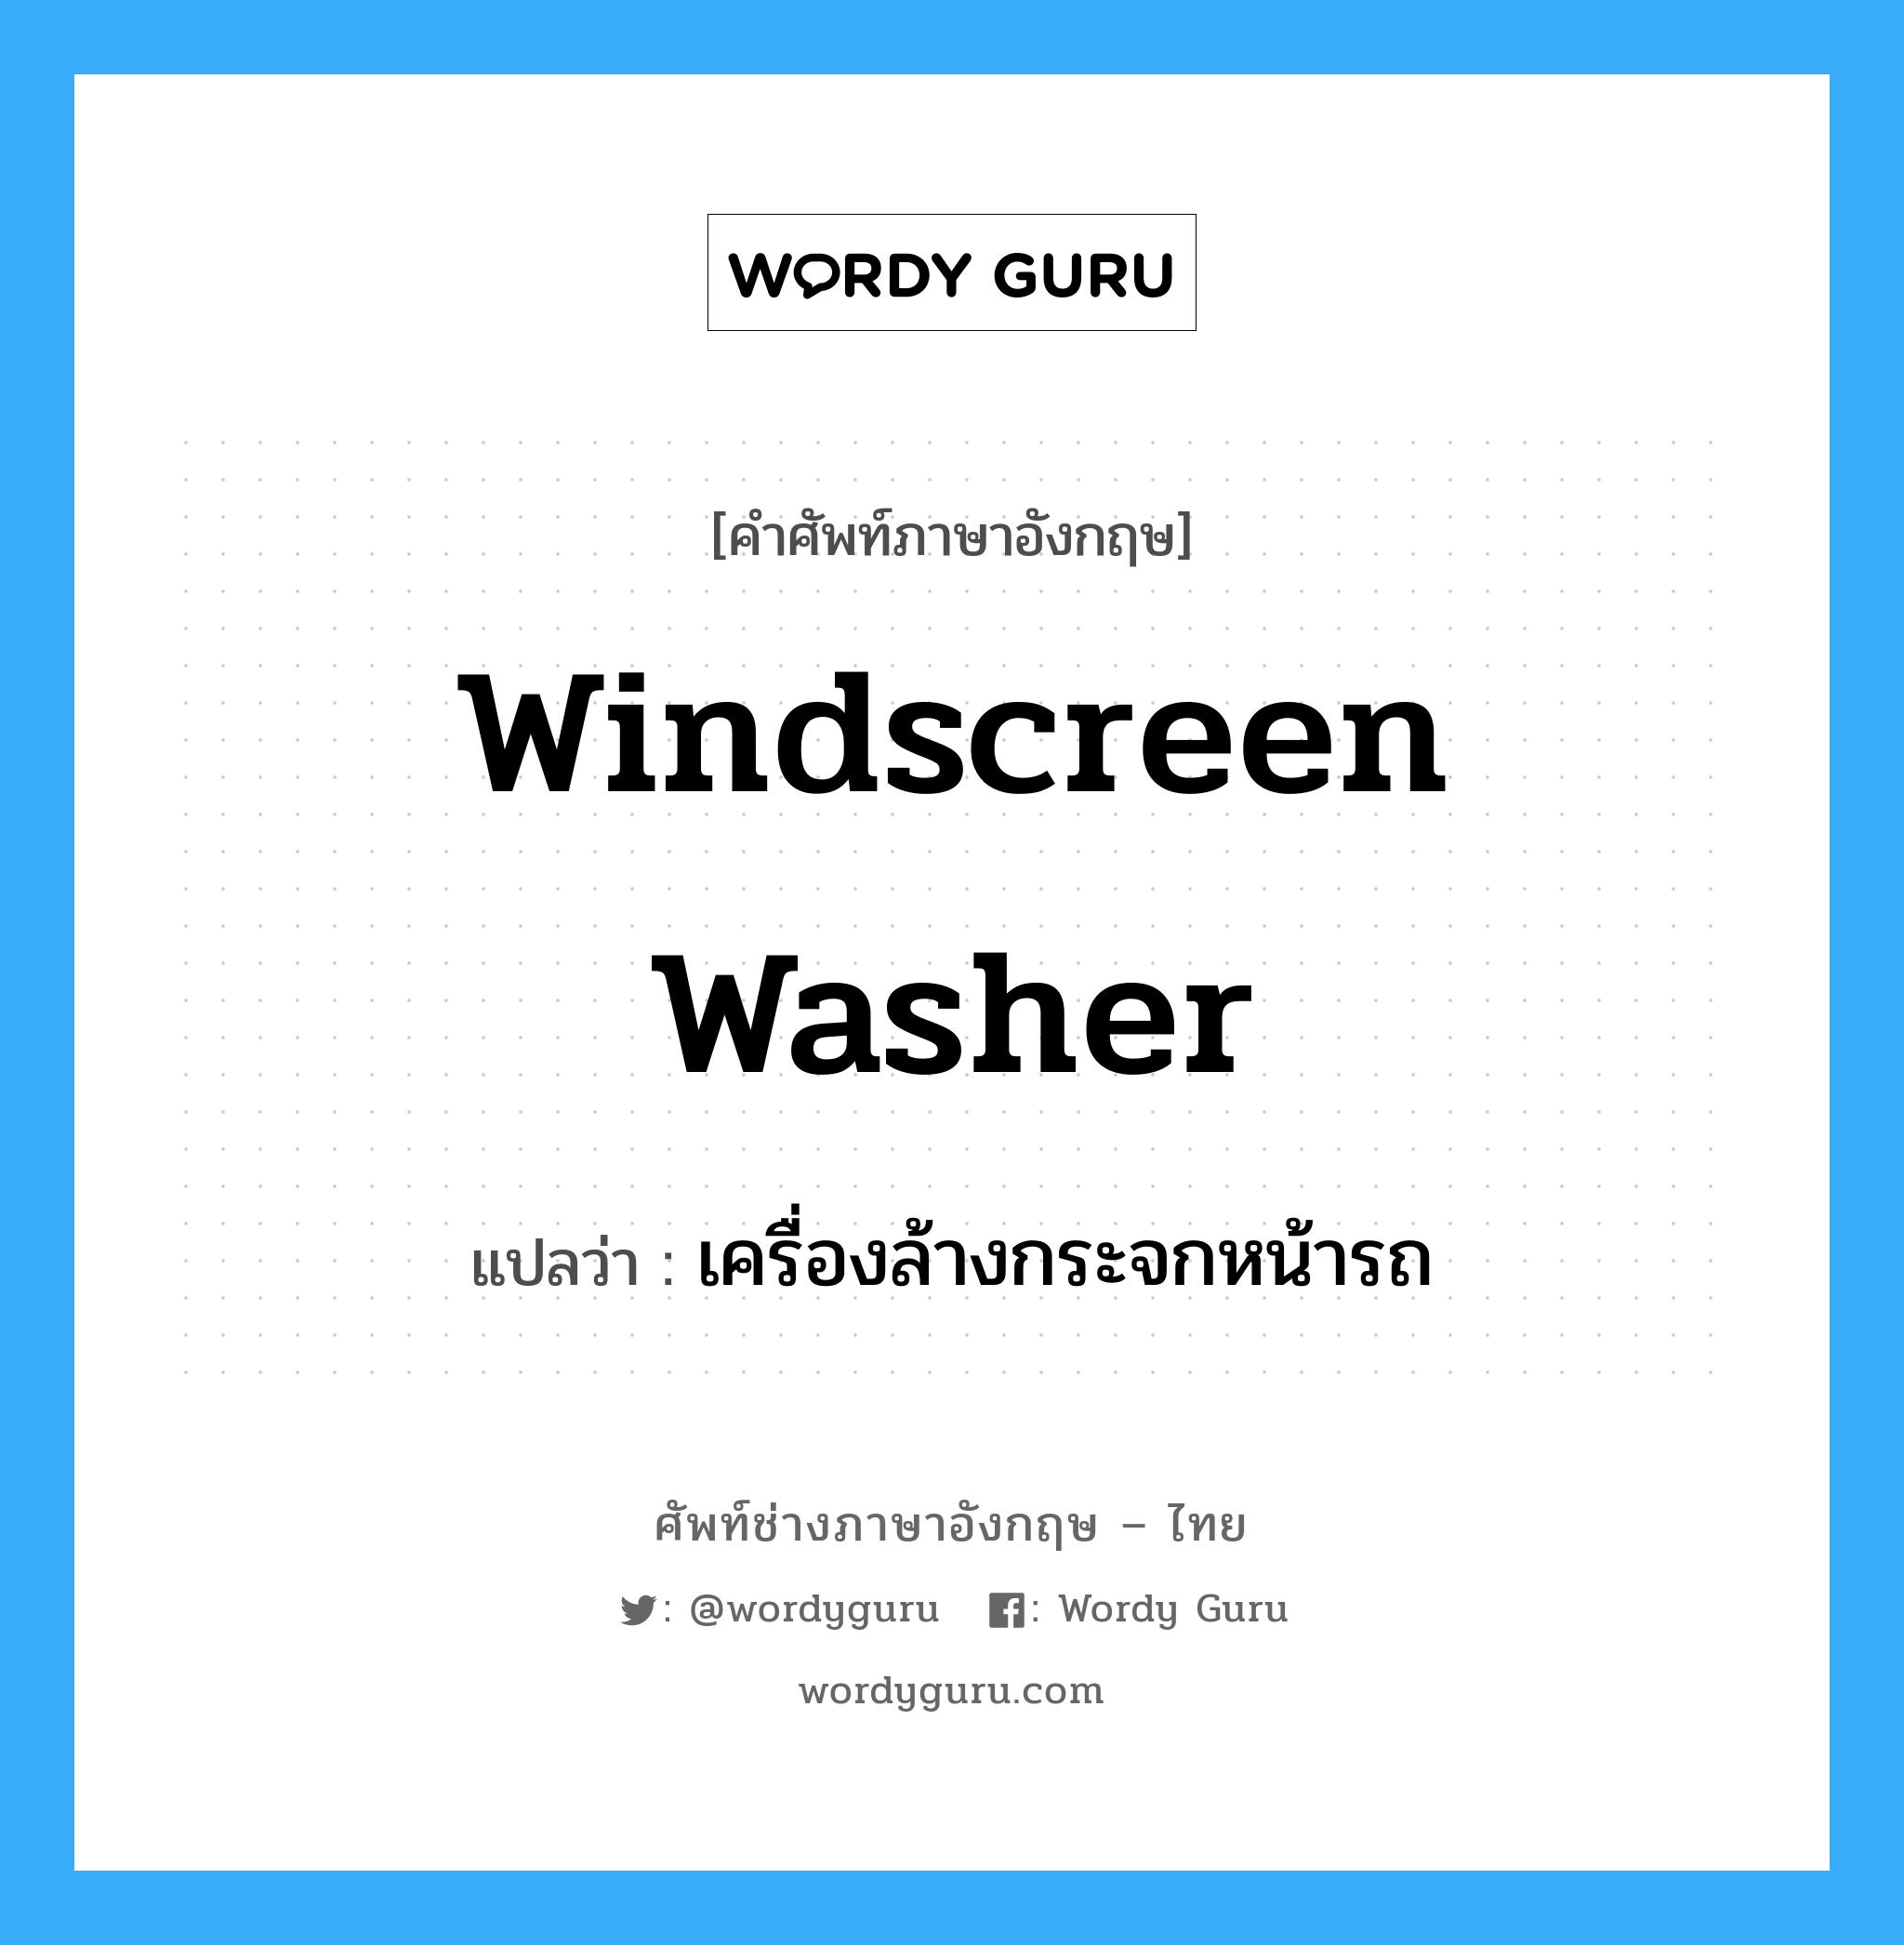 windscreen washer แปลว่า?, คำศัพท์ช่างภาษาอังกฤษ - ไทย windscreen washer คำศัพท์ภาษาอังกฤษ windscreen washer แปลว่า เครื่องล้างกระจกหน้ารถ